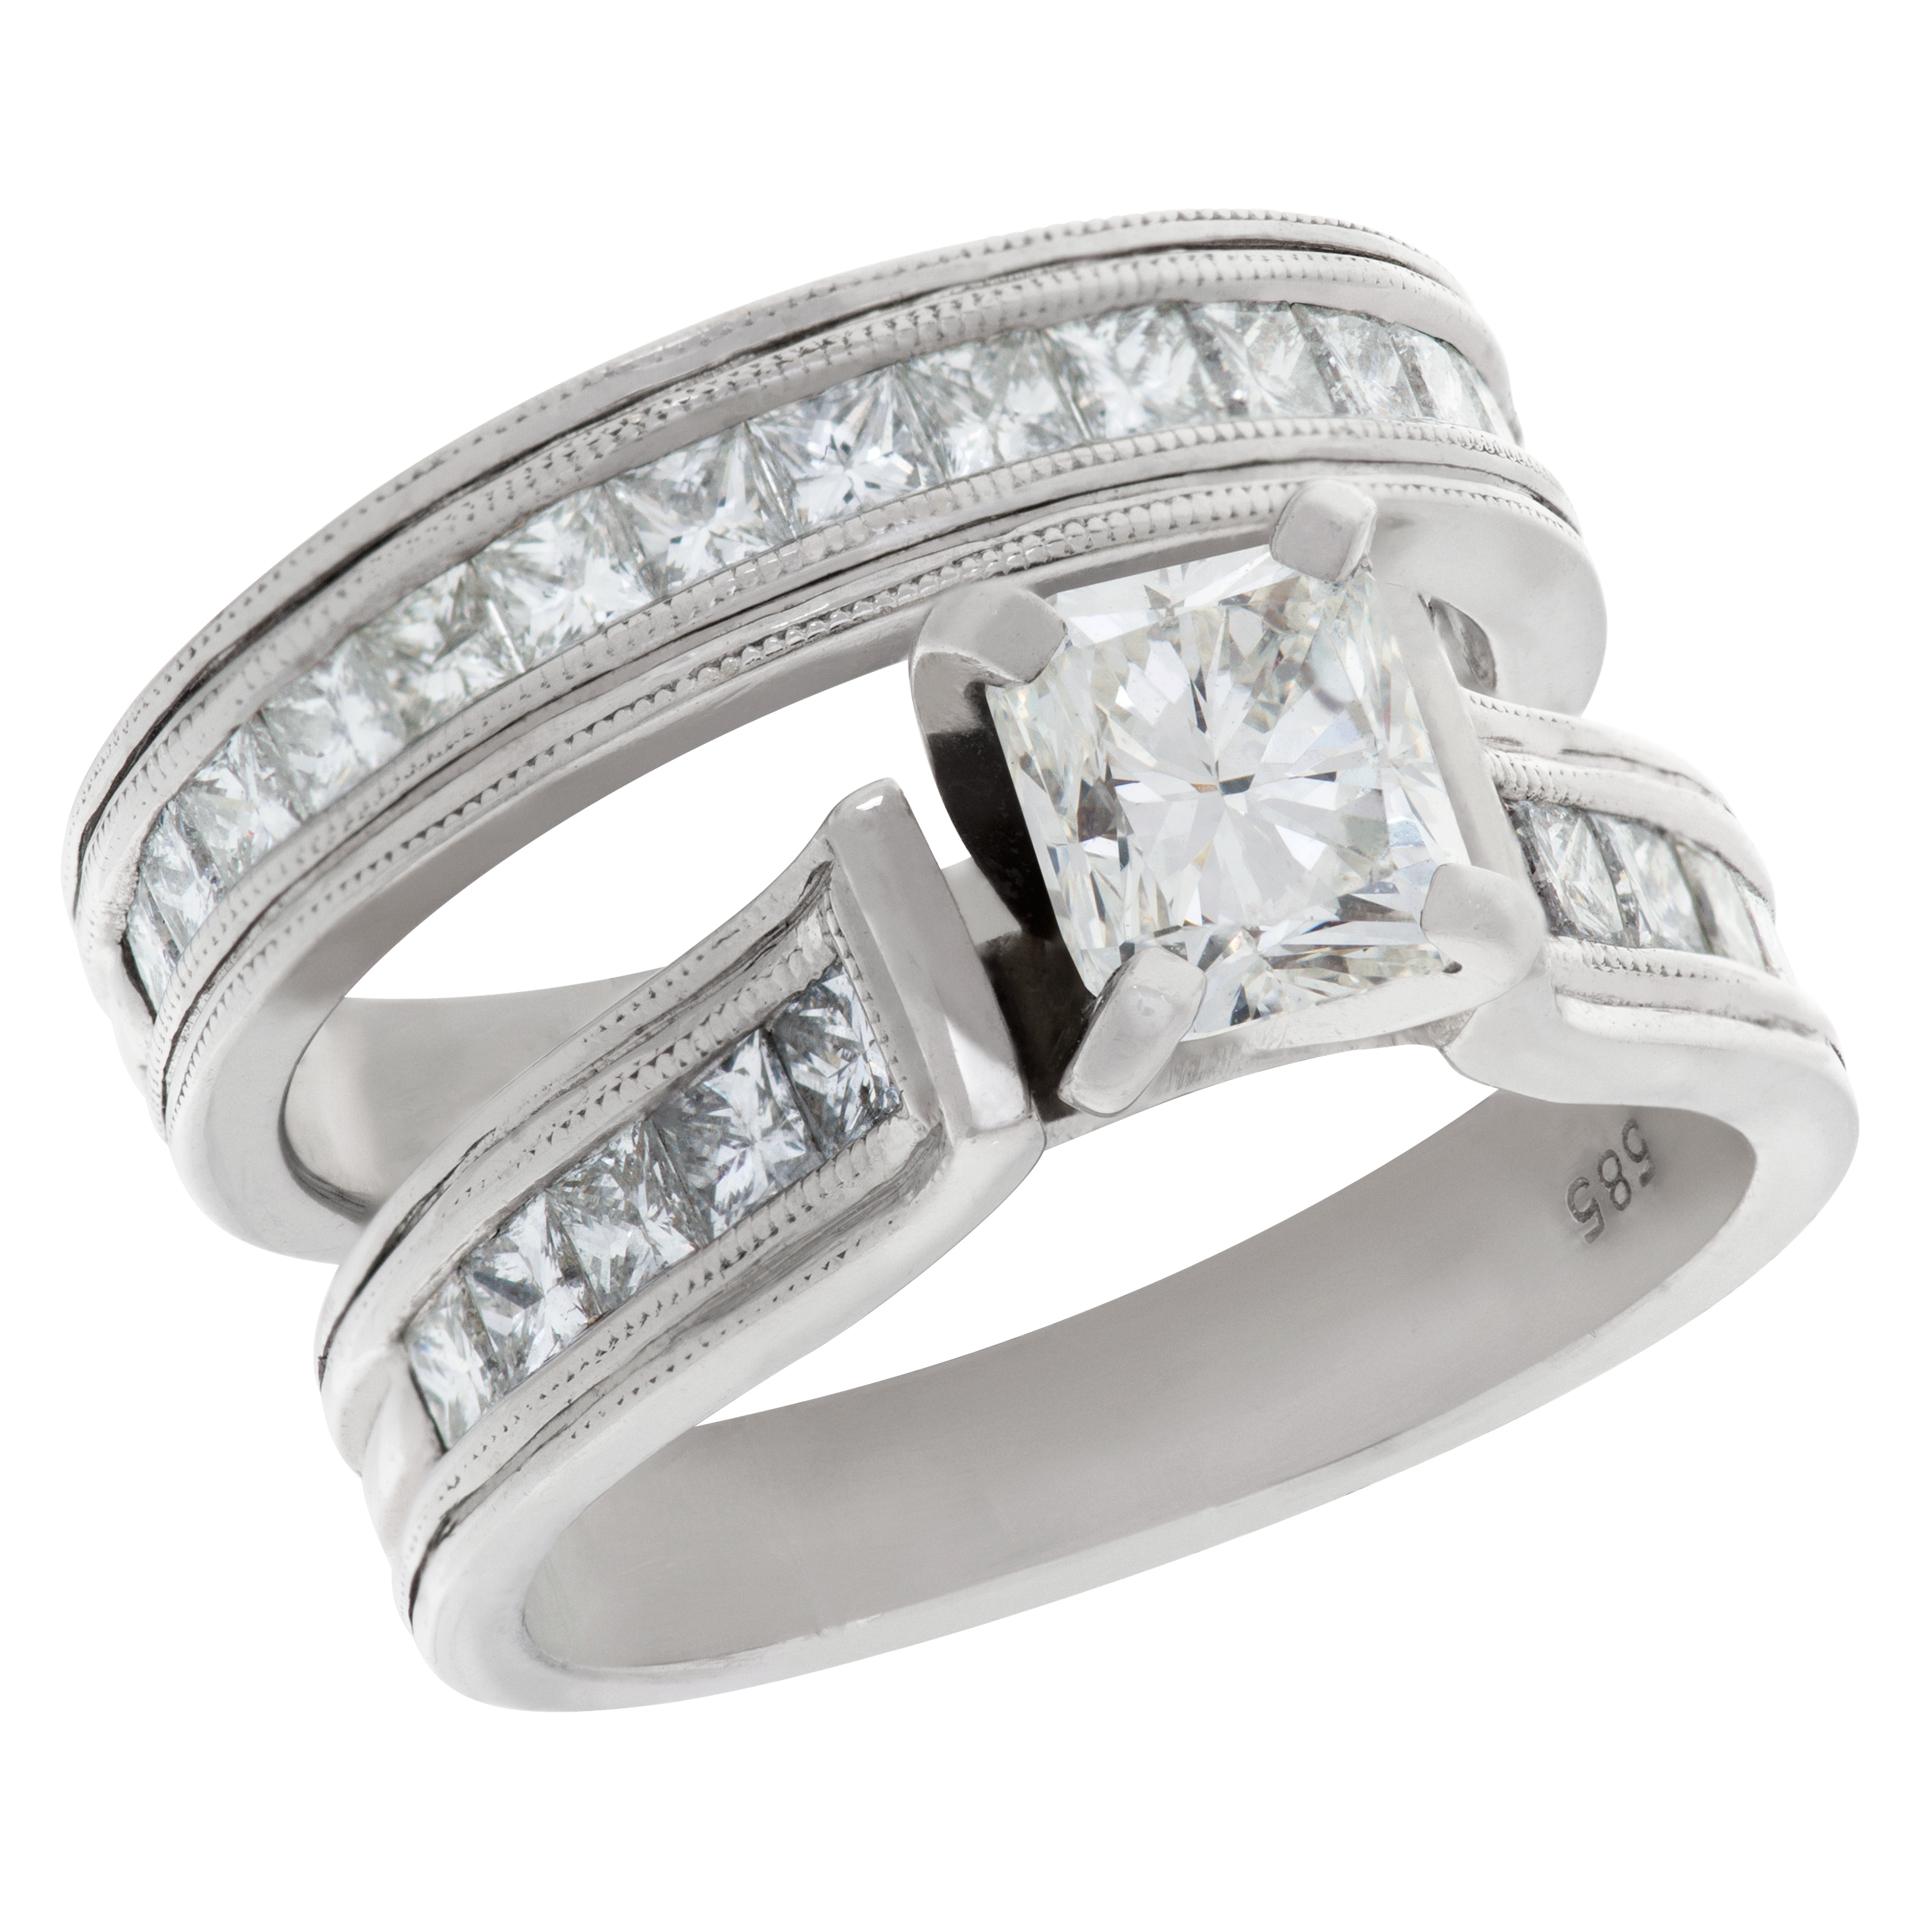 Diamond Engagement Ring Set in 14k White Gold, 0.75 Ct Center Diamond For Sale 1